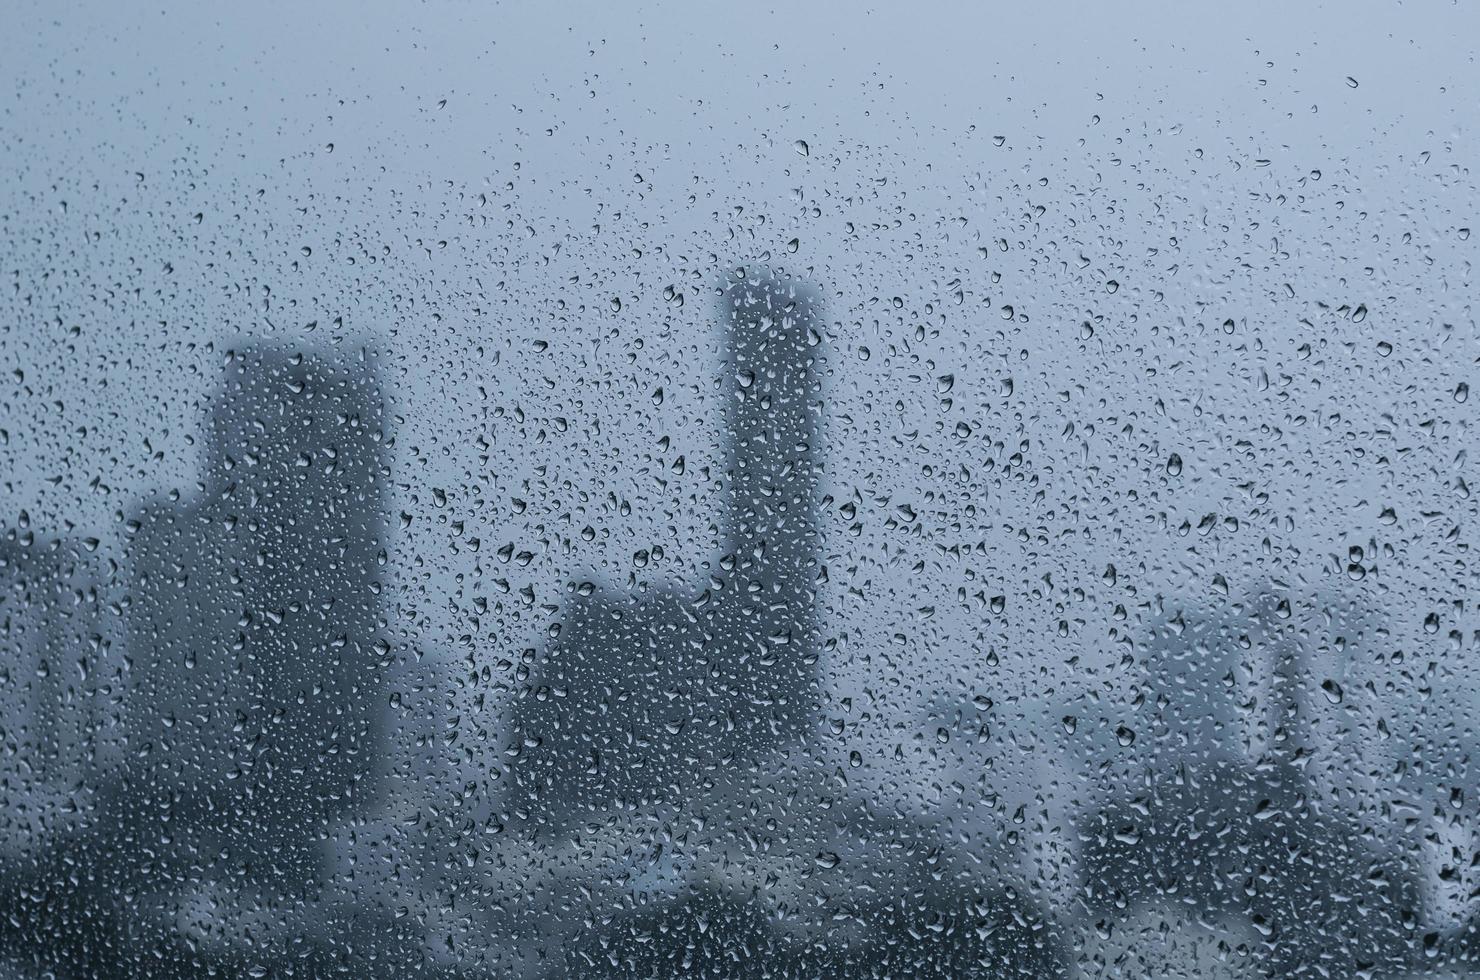 regendruppel op glazen raam overdag in het moessonseizoen met de wazige achtergrond van stadsgebouwen. foto